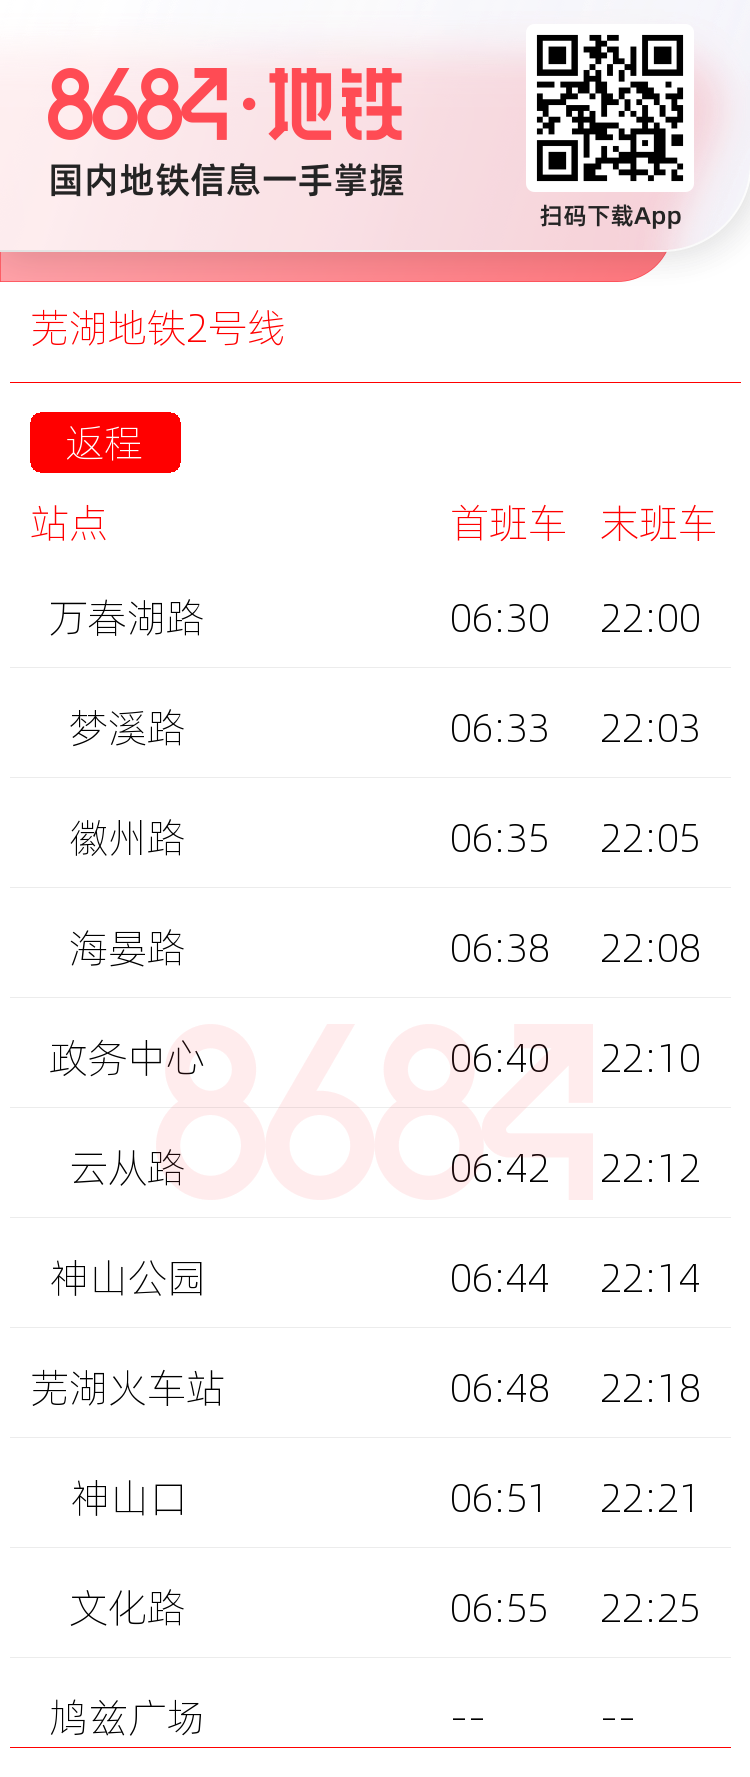 芜湖地铁2号线运营时间表